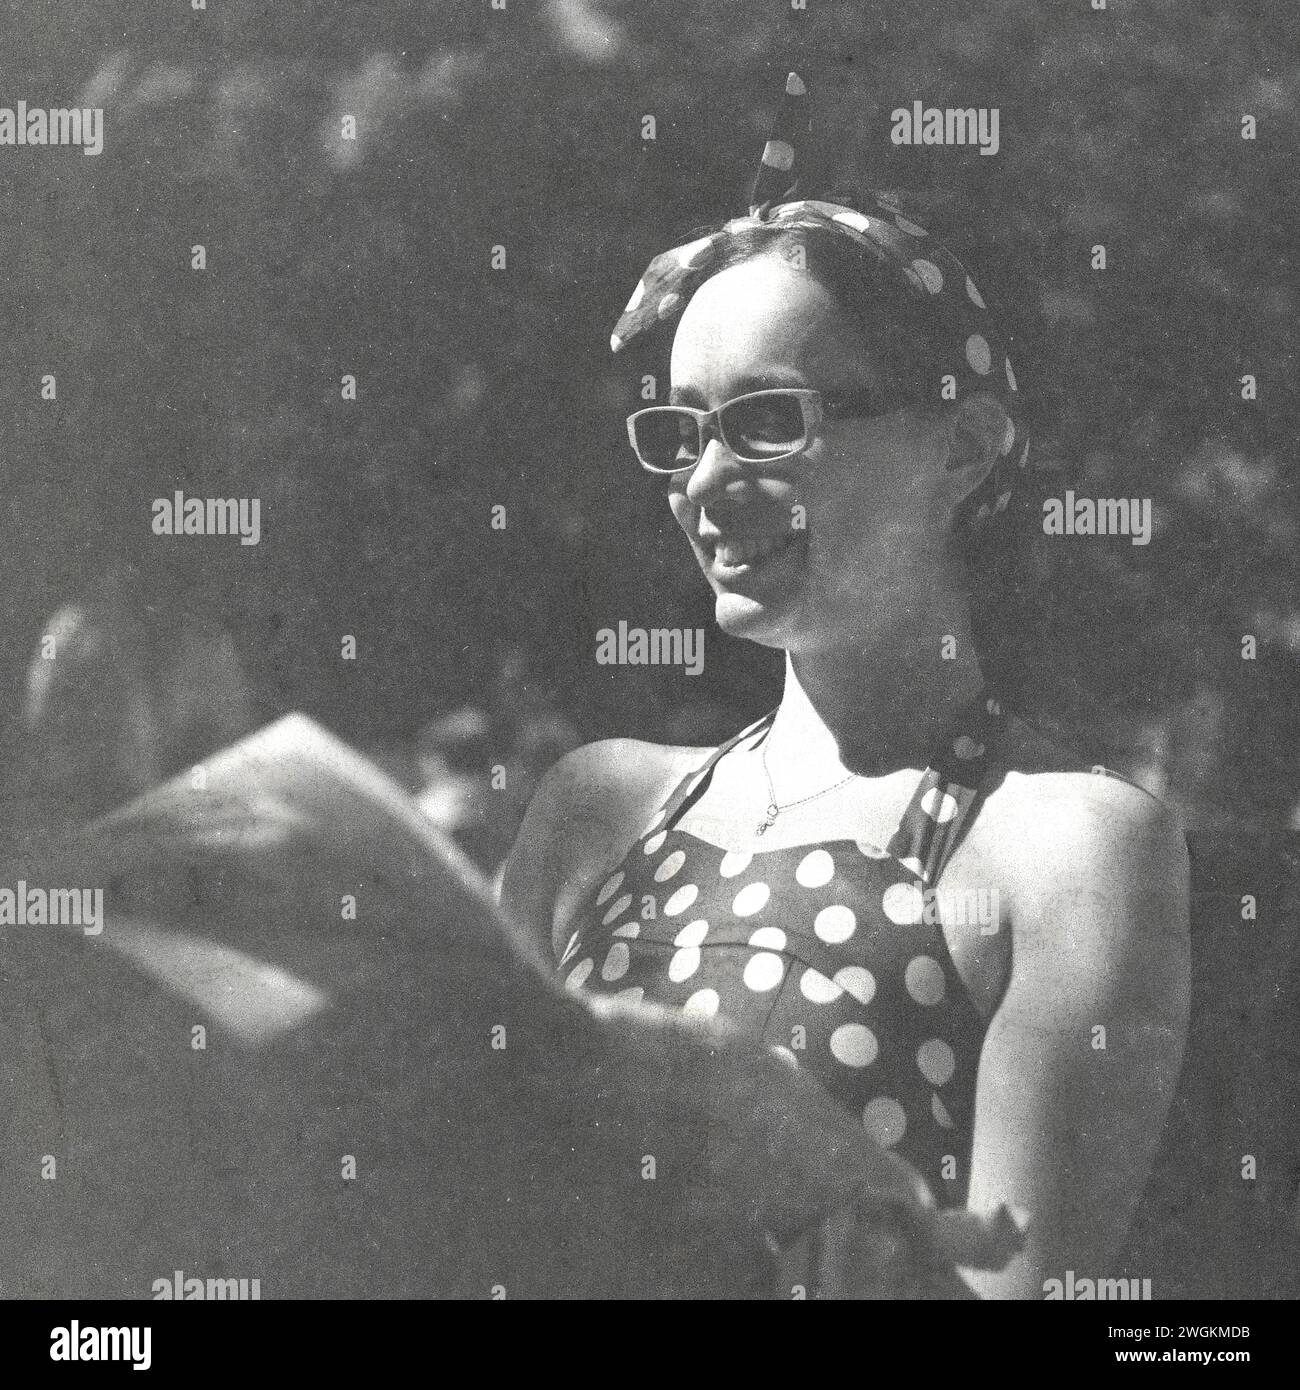 Goodwood Revival 2023 - immagini scattate su un vecchio film Rolleiflex su Kodak, scaduto nel 1985. Foto Stock